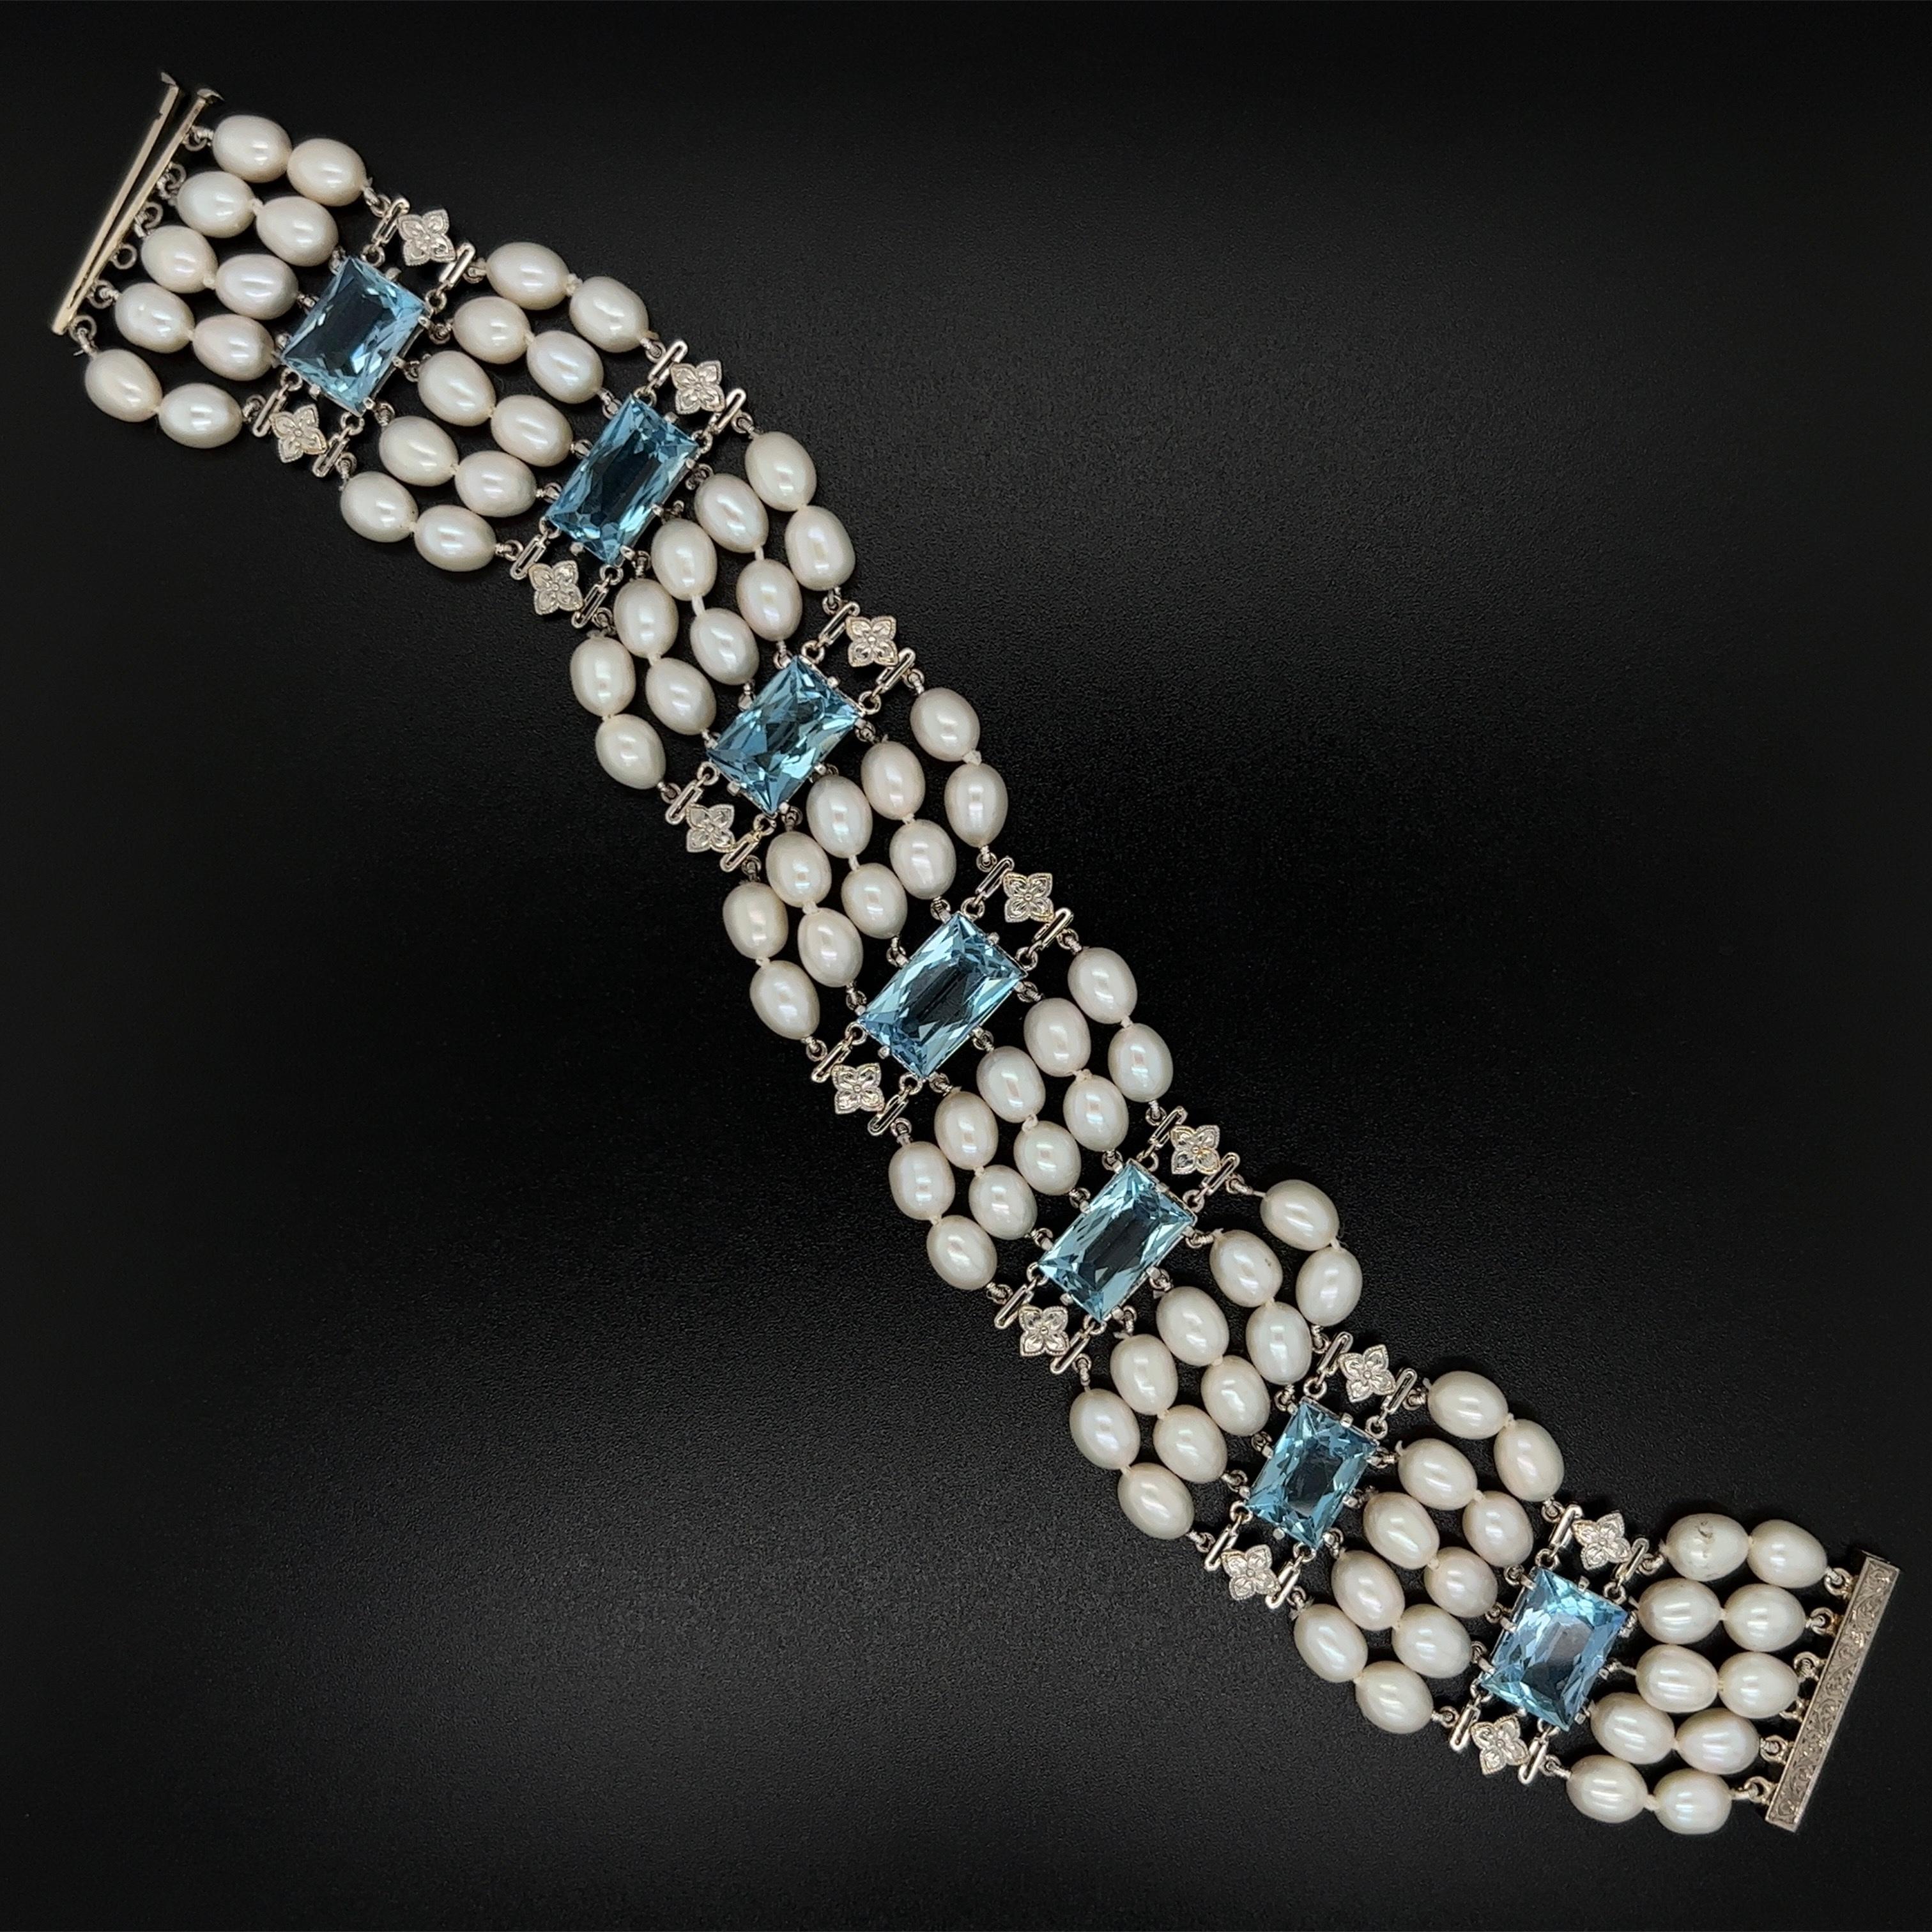 Einfach schön! Mid Century Modern Aquamarin und Perle 5-Stränge-Armband. Mit 7 rechteckigen tiefblauen Aquamarinen mit einem Gewicht von ca. 28 tcw. und Perlen dazwischen. Armband misst ca. 7,5